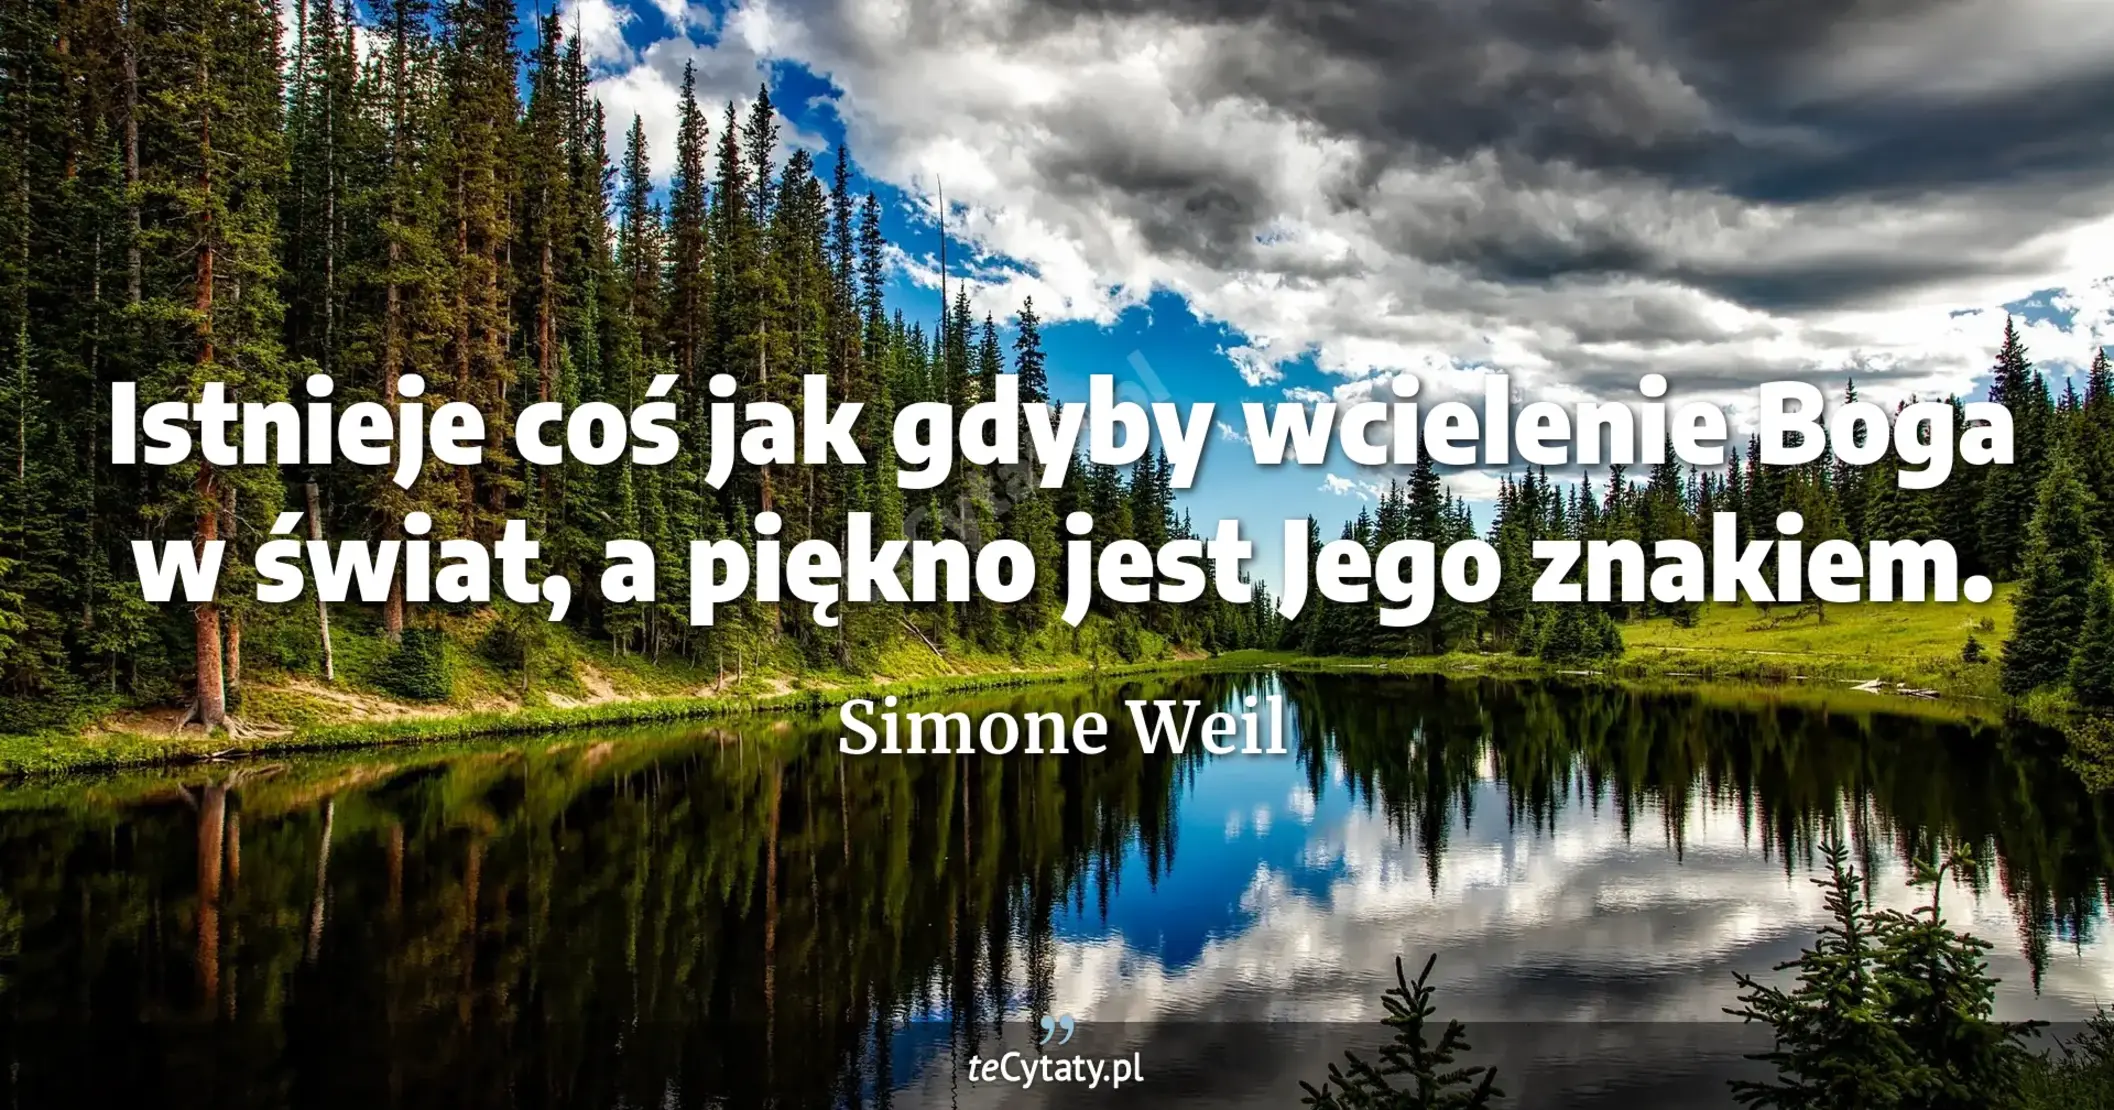 Istnieje coś jak gdyby wcielenie Boga w świat, a piękno jest Jego znakiem. - Simone Weil